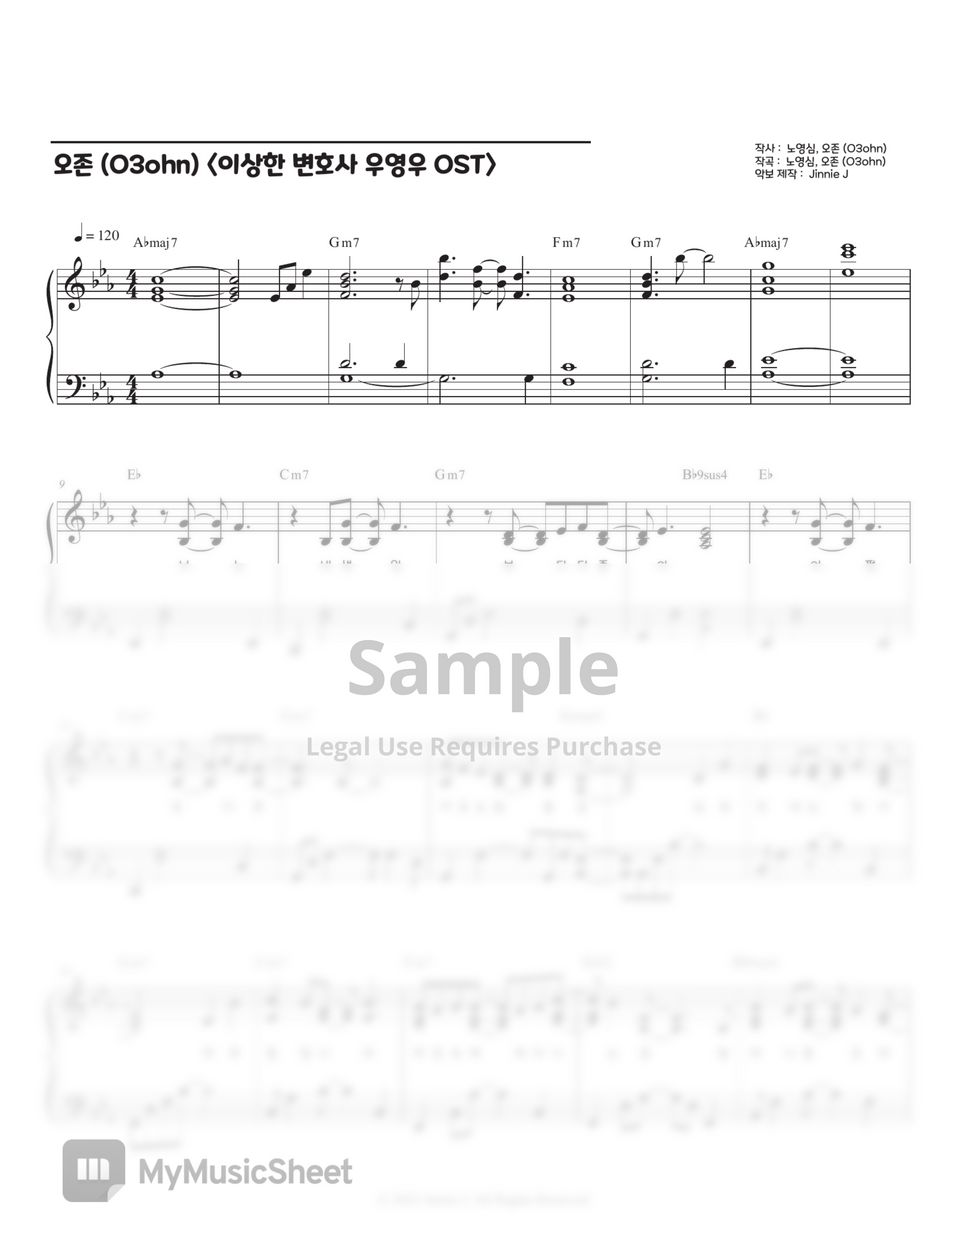 오존 (O3ohn) - Better Than Birthday (이상한 변호사 우영우 OST) by Jinnie J